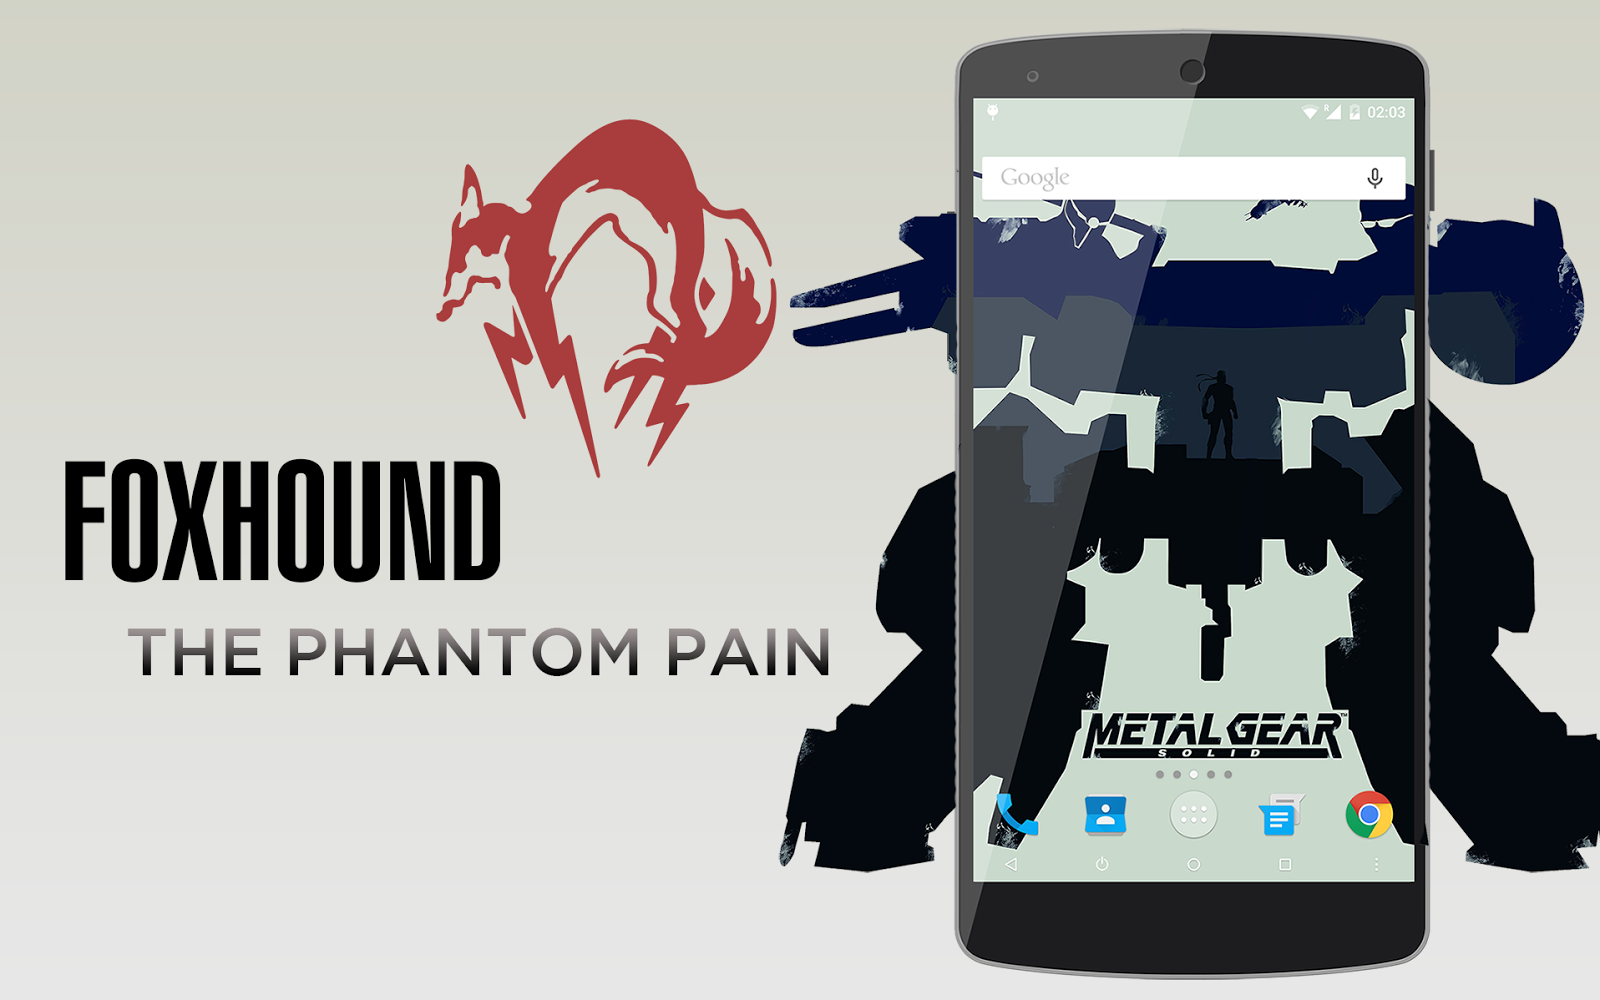 メタルギア好きには堪らないnexus 5向けカスタムrom Foxhound The Phantom Pain